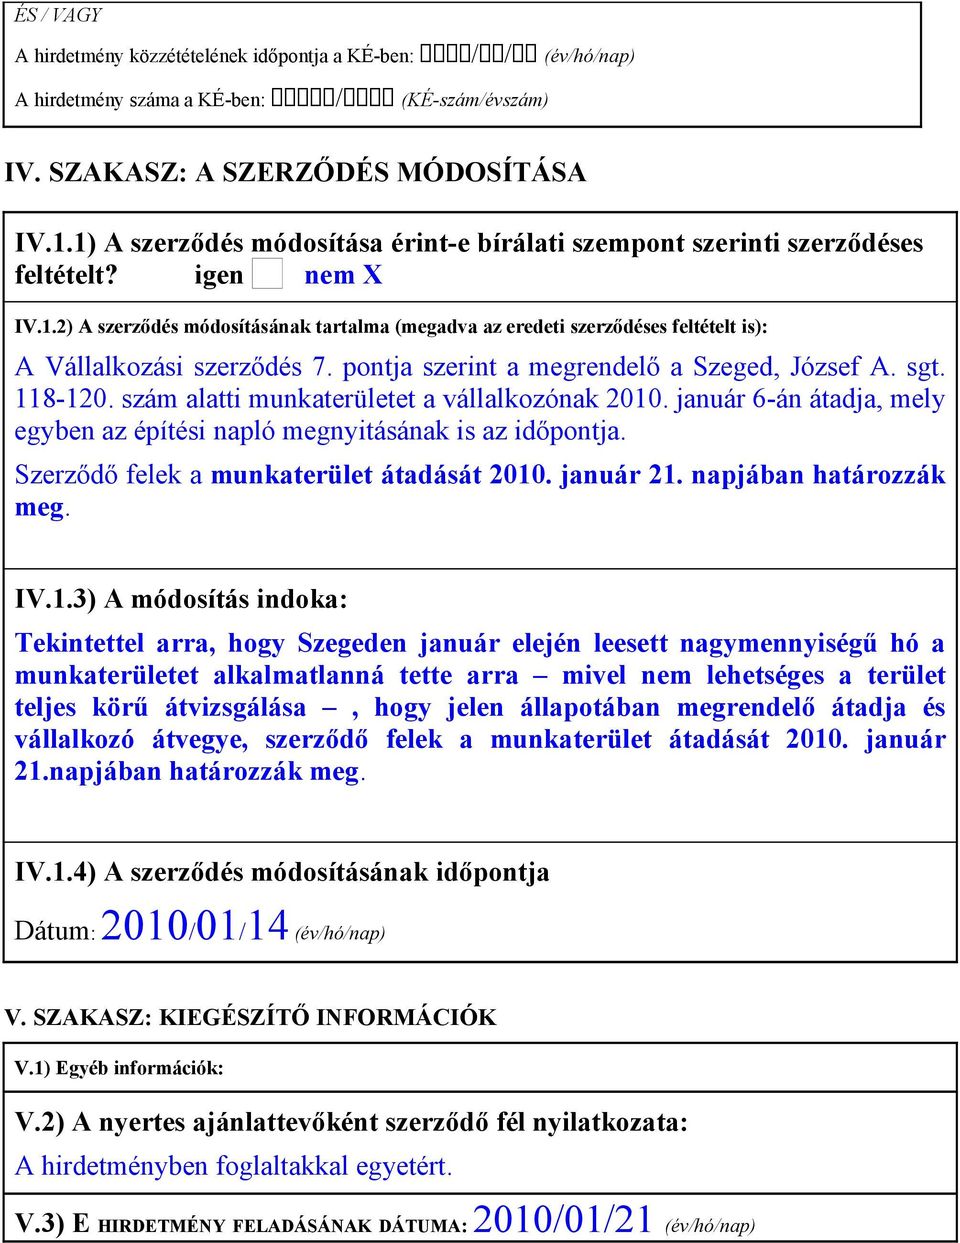 pontja szerint a megrendelő a Szeged, József A. sgt. 118-120. szám alatti munkaterületet a vállalkozónak 2010. január 6-án átadja, mely egyben az építési napló megnyitásának is az időpontja.